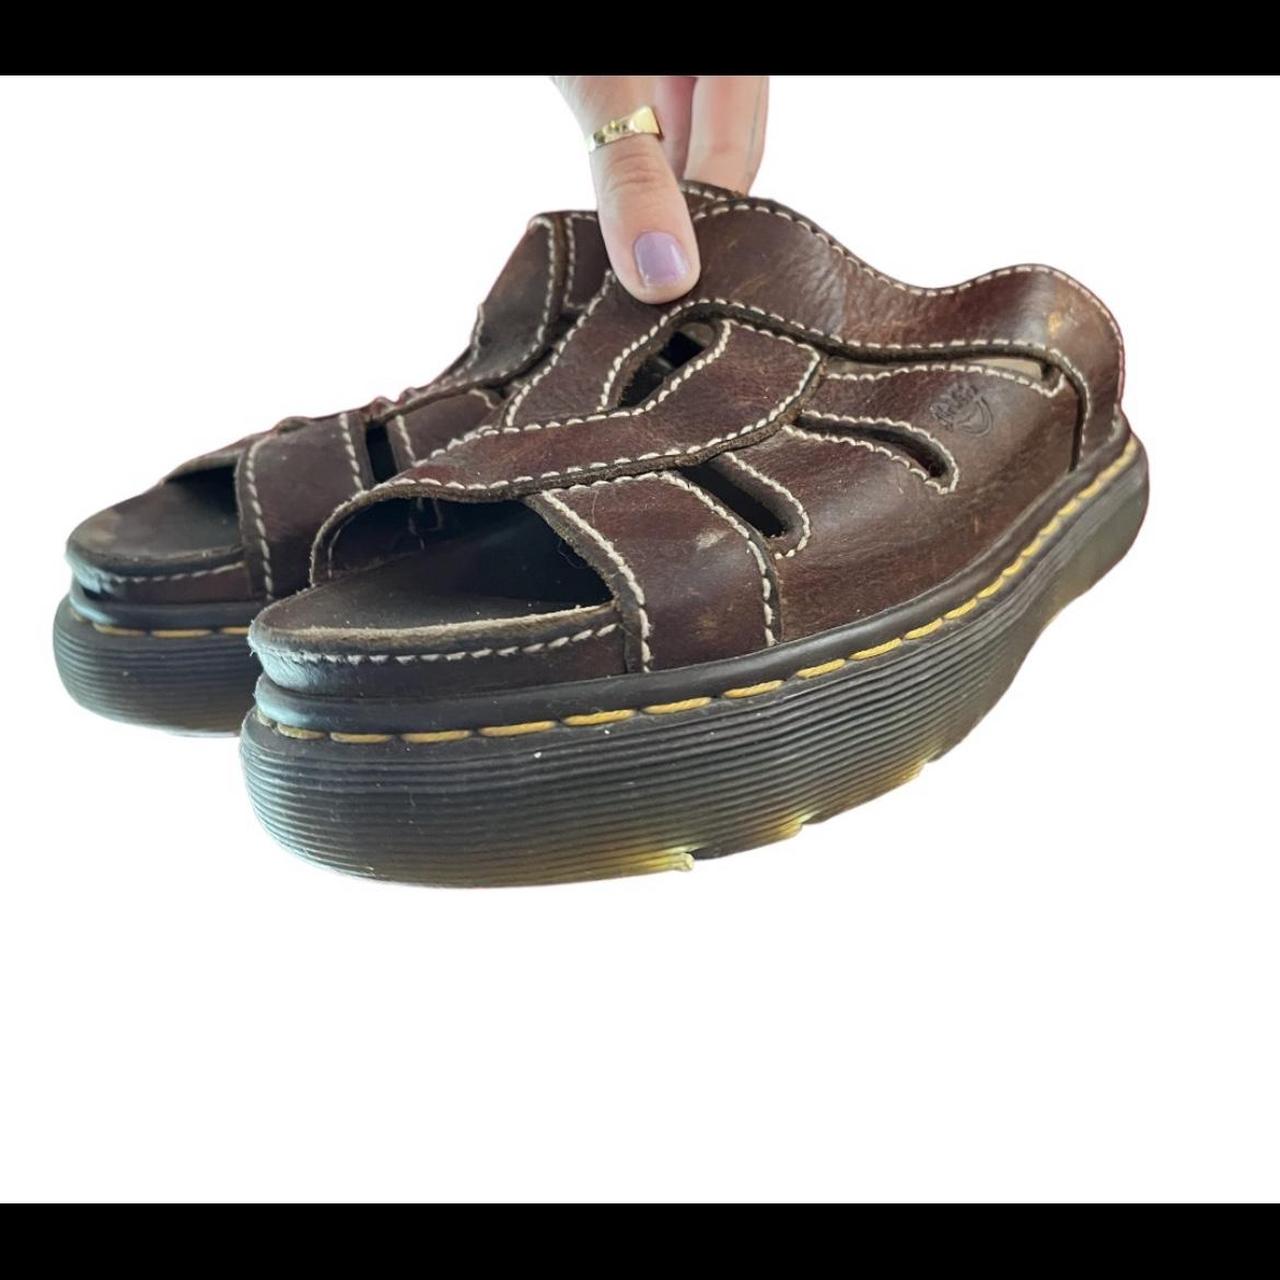 🌸 Vintage 90s/y2k Doc Martens sandals 🌞 #vintagedocmartens #docmartens # 90s #y2kfashion | Instagram